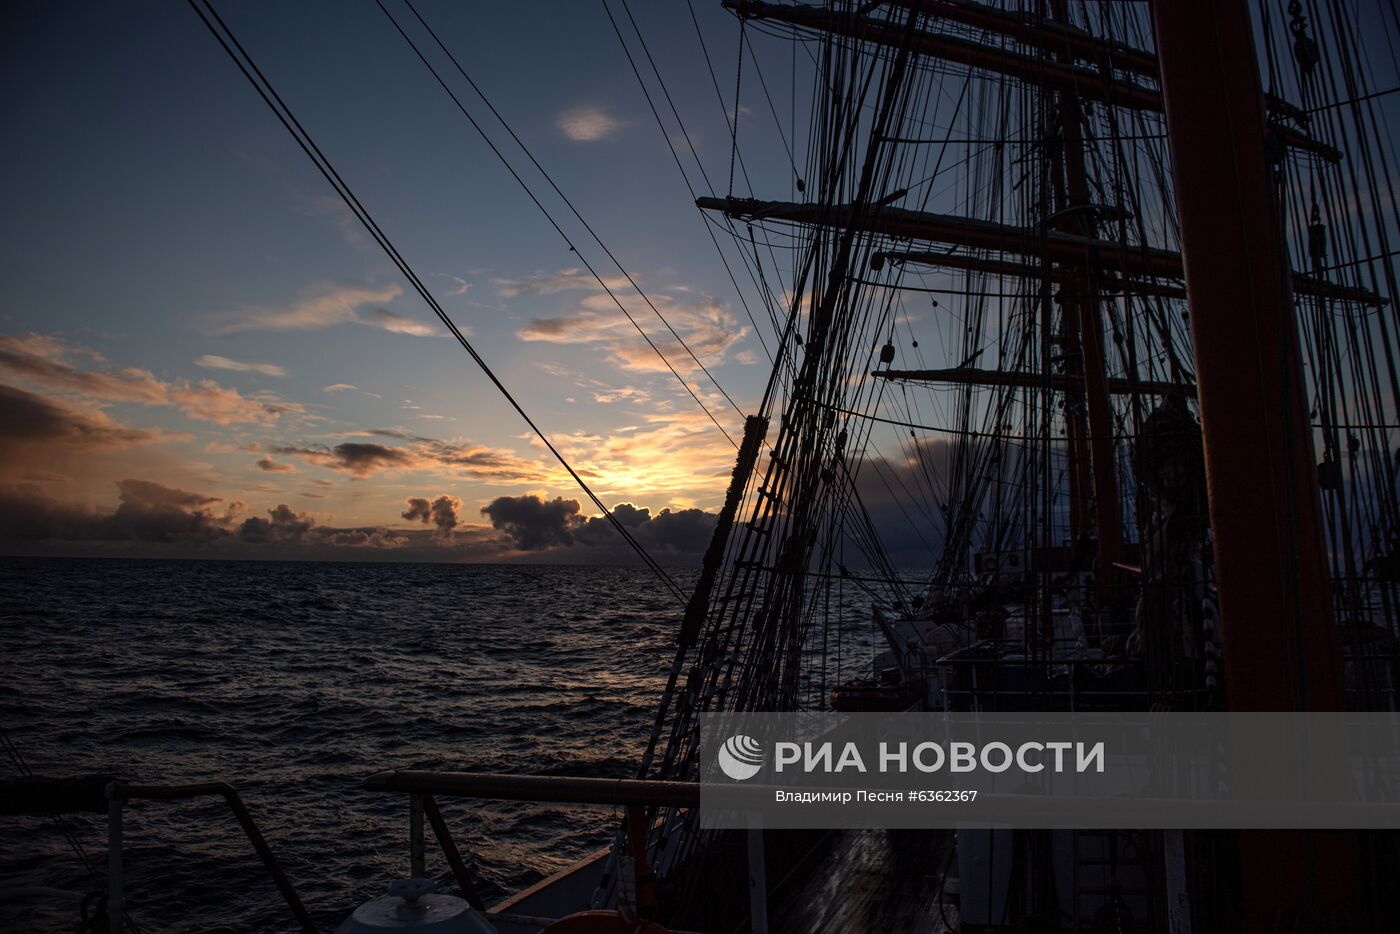 Экспедиция учебного парусного судна "Седов" по маршруту Северного пути